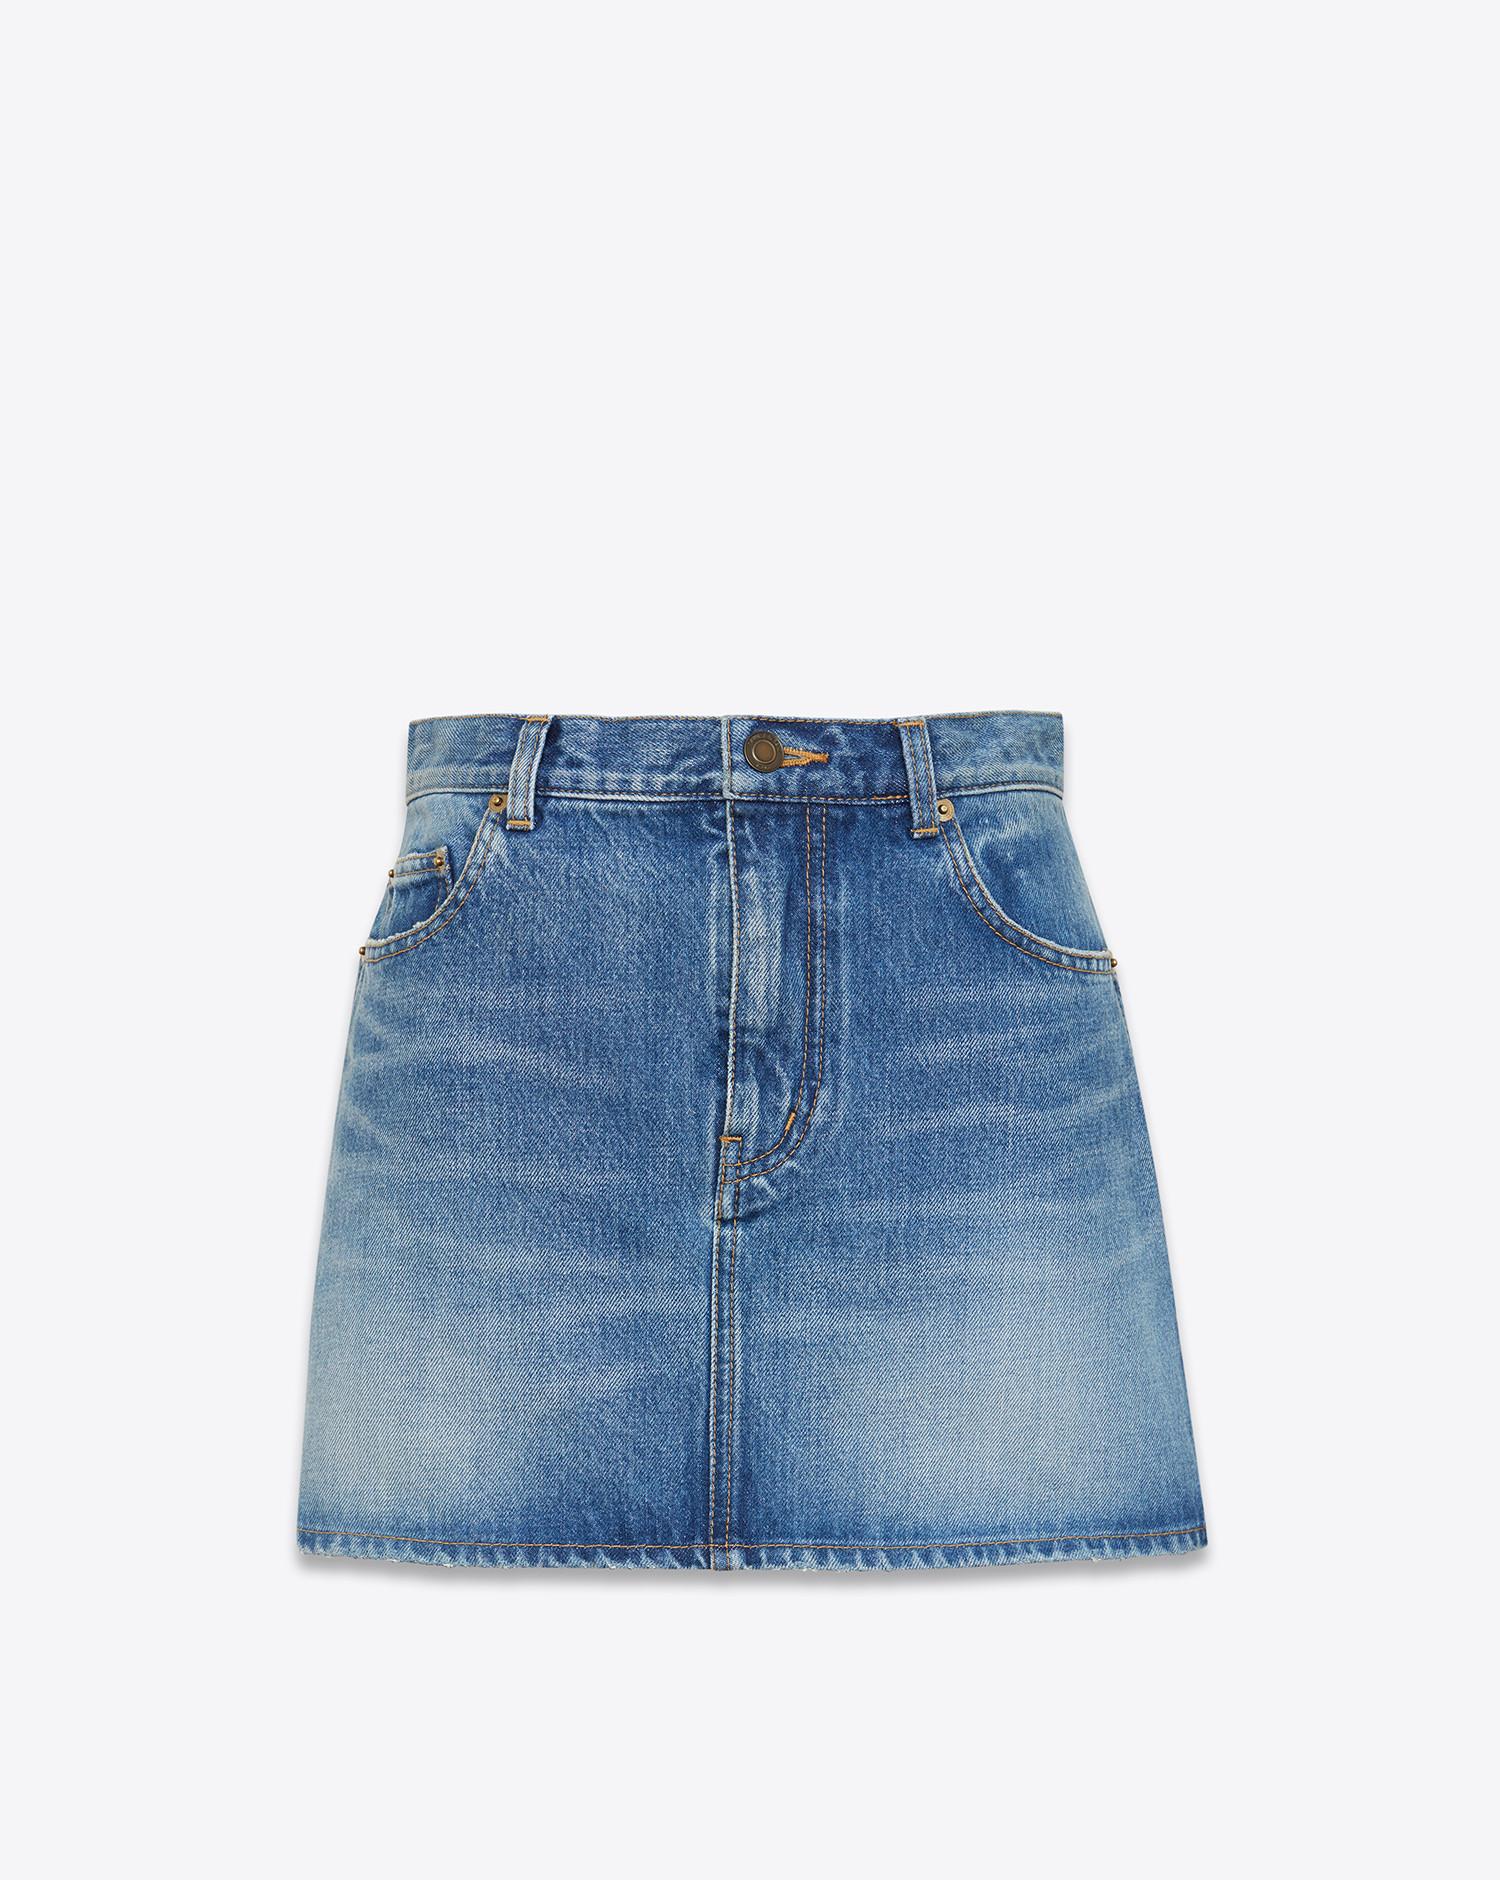 Saint Laurent Cotton Short Skirts In Blue Lyst 3574